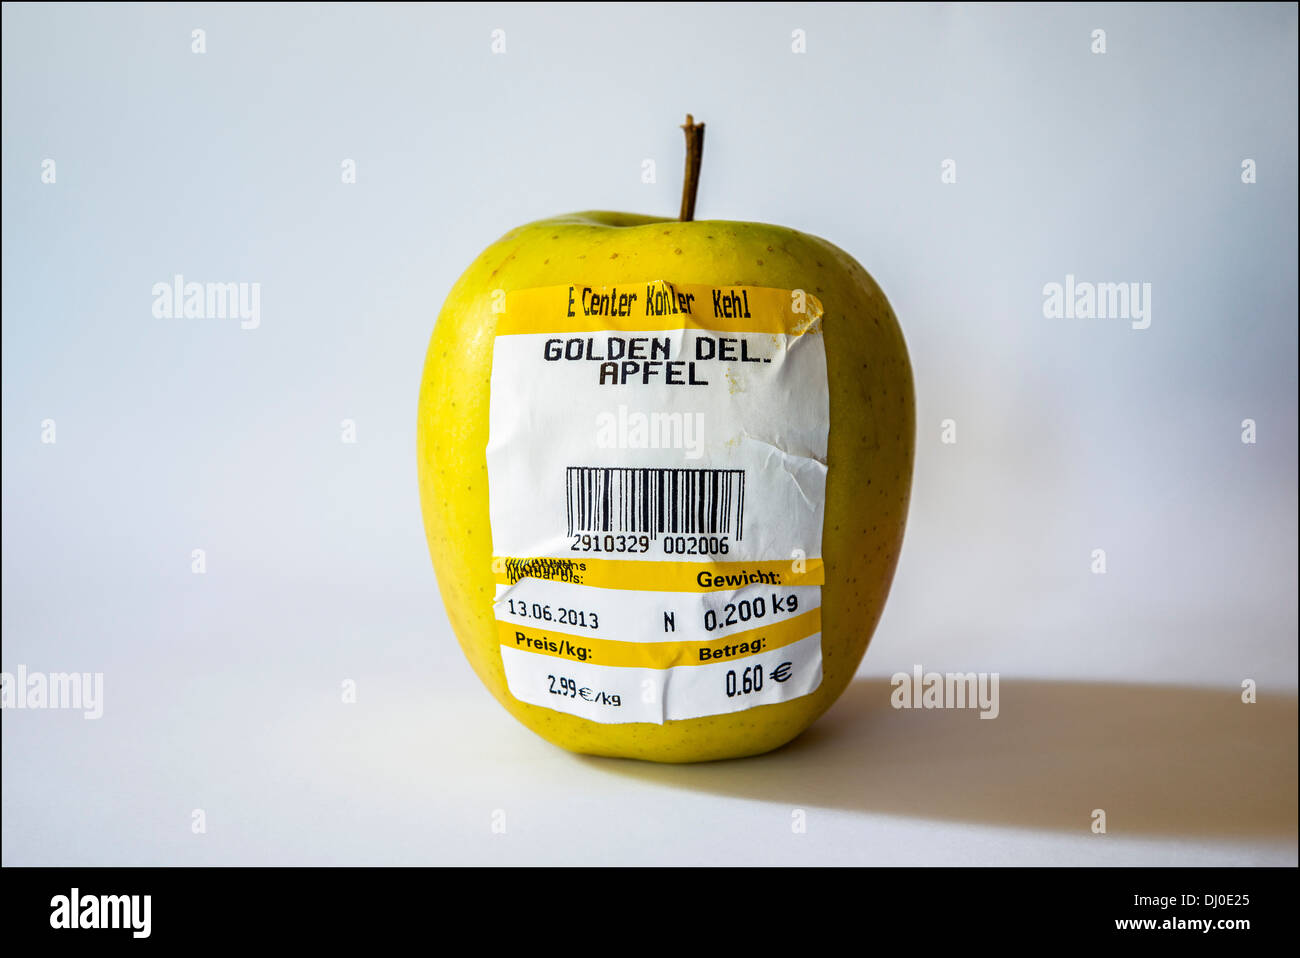 Ein Apfel Golden delicious mit deutschen Barcode-Label zeigt Gewicht und  Preis in Euro Stockfotografie - Alamy